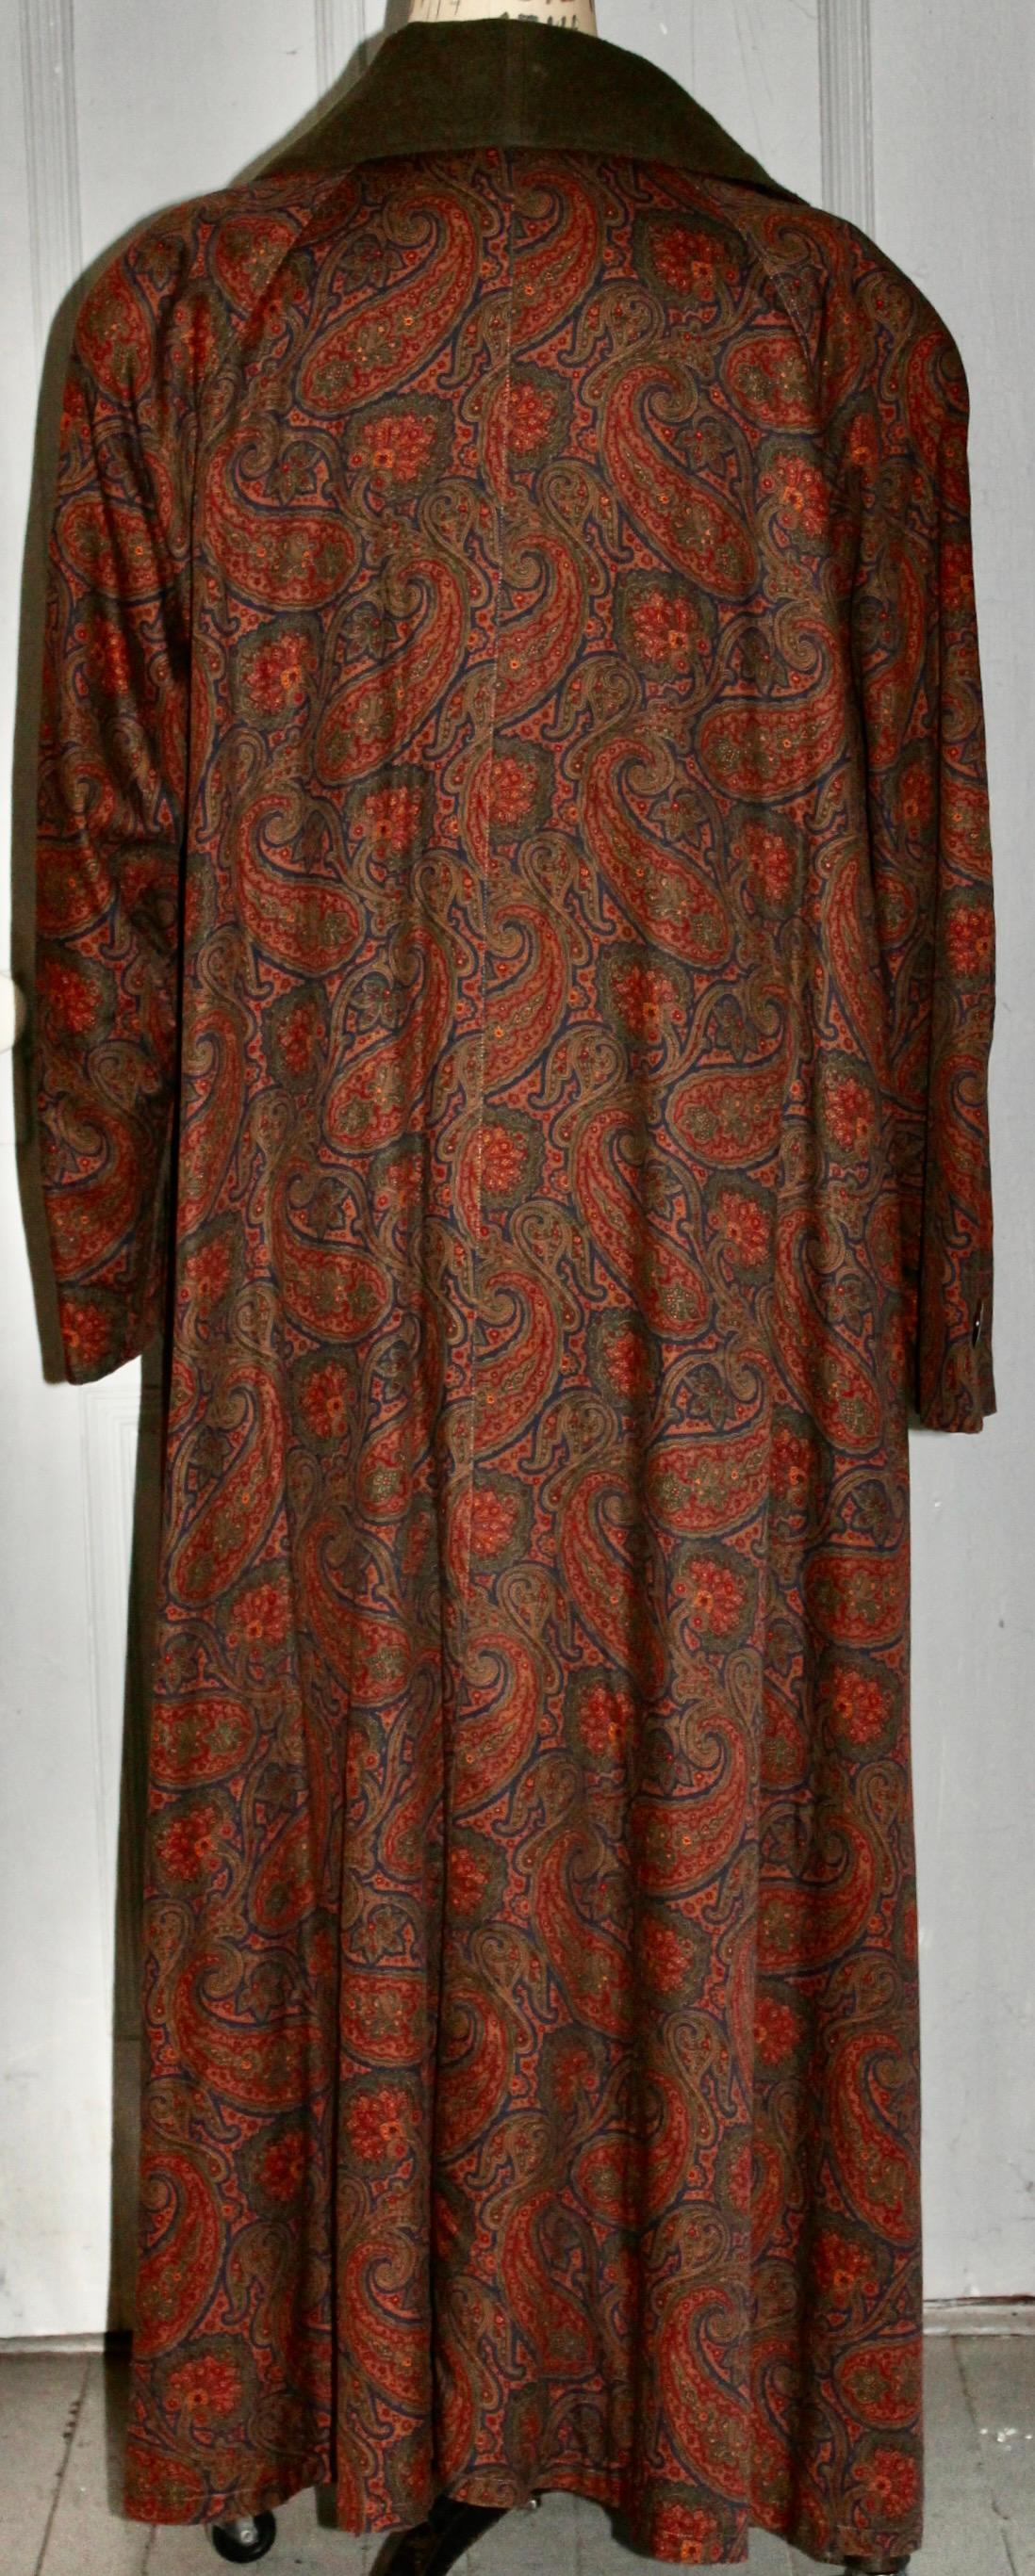 Bill Blass Paisley Edwardian Style Dress Coat 2